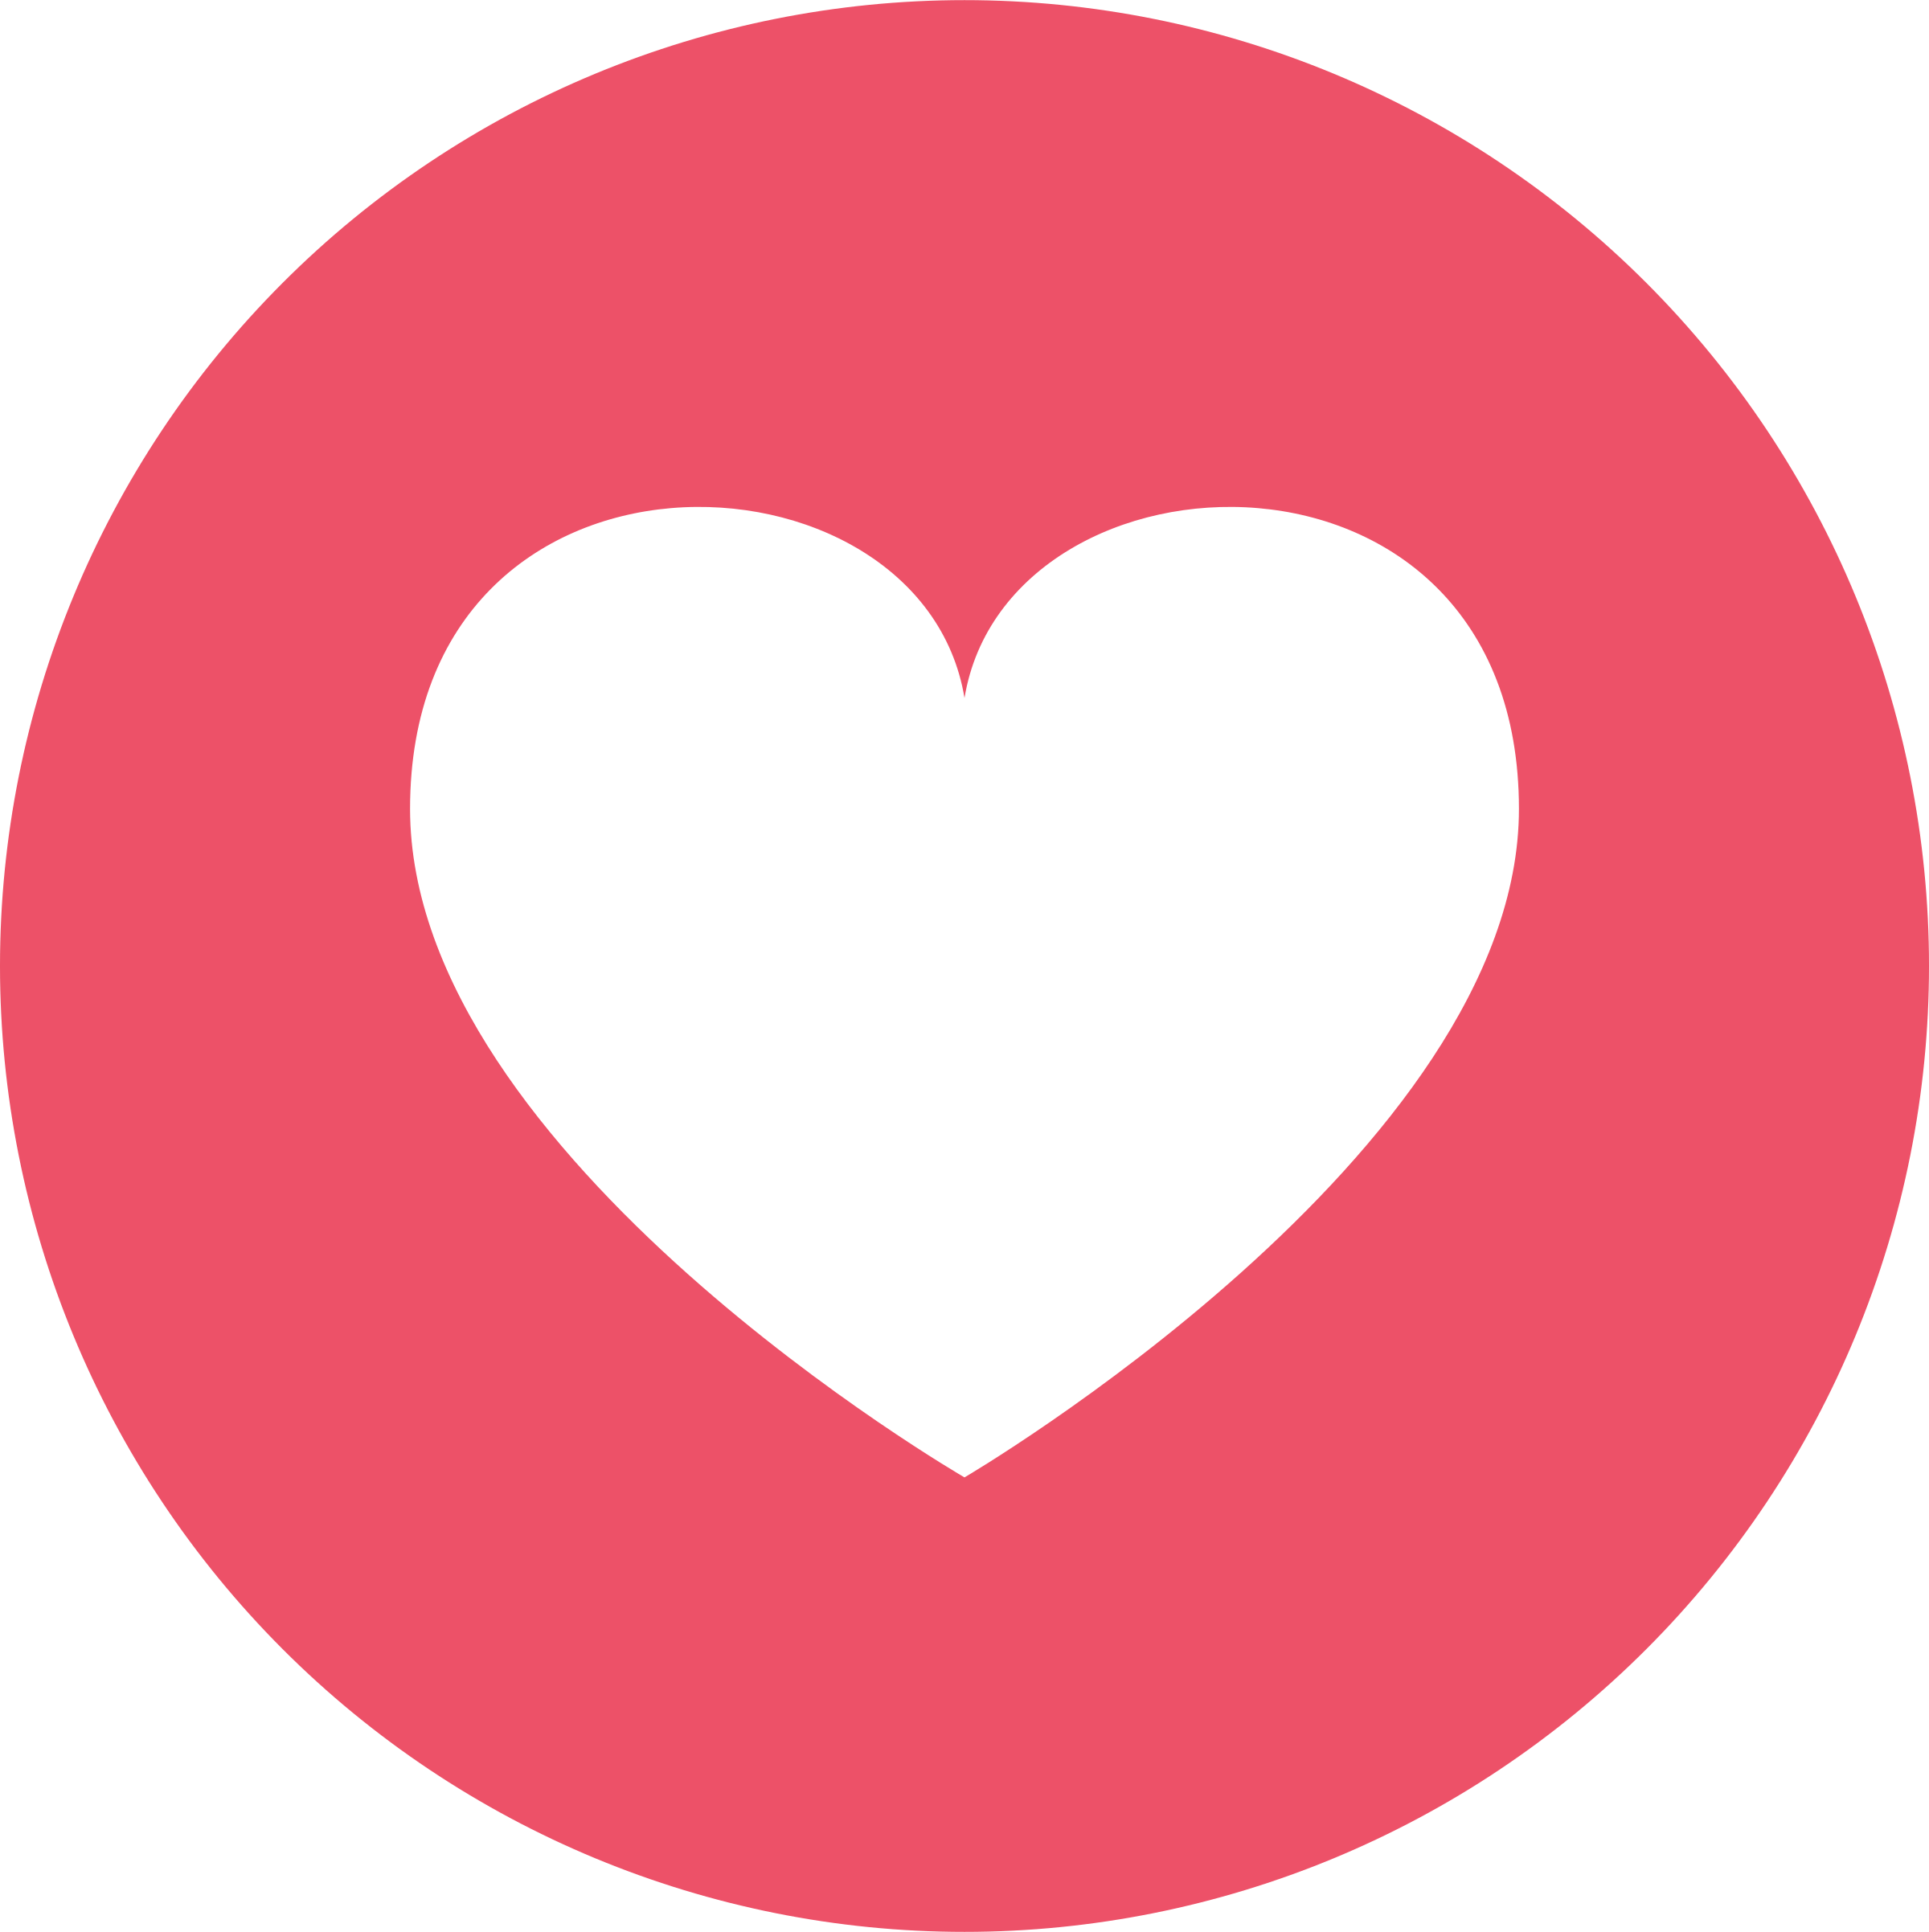 Love Transparent Logo - Facebook Love Logo PNG Transparent & SVG Vector - Freebie Supply